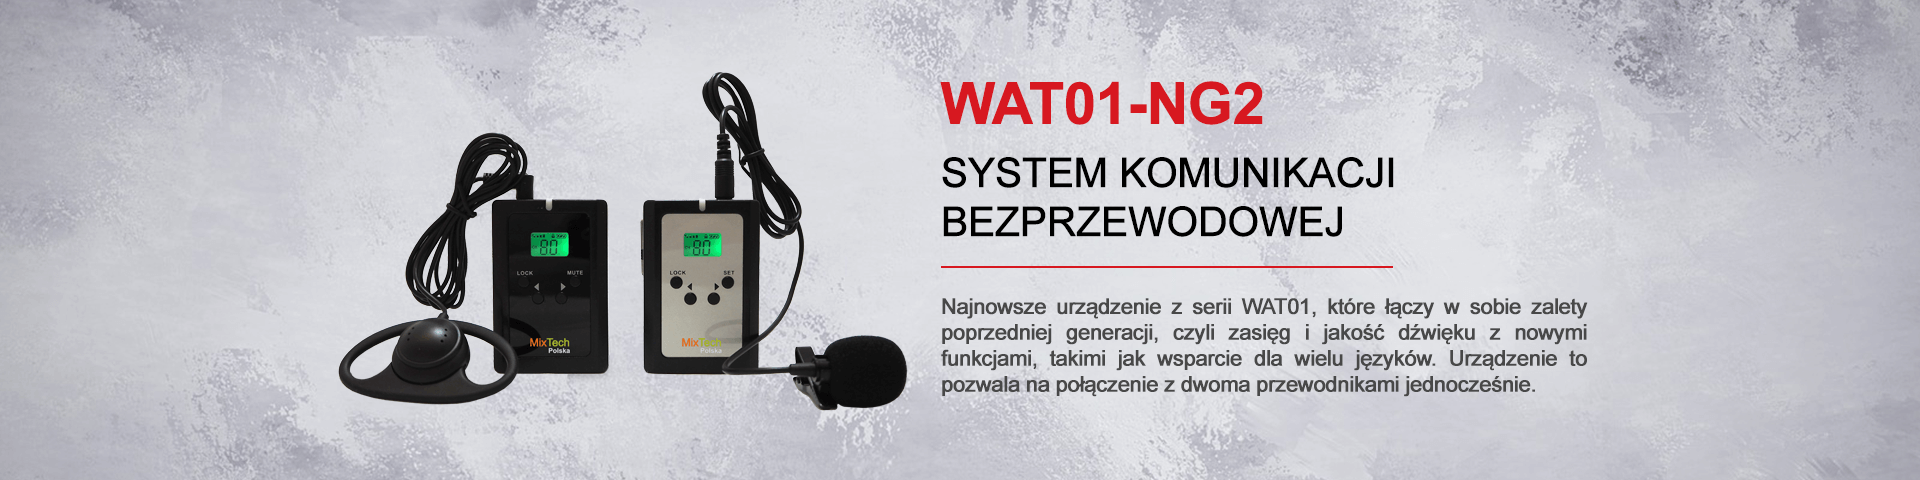 WAT01-NG2 - slider